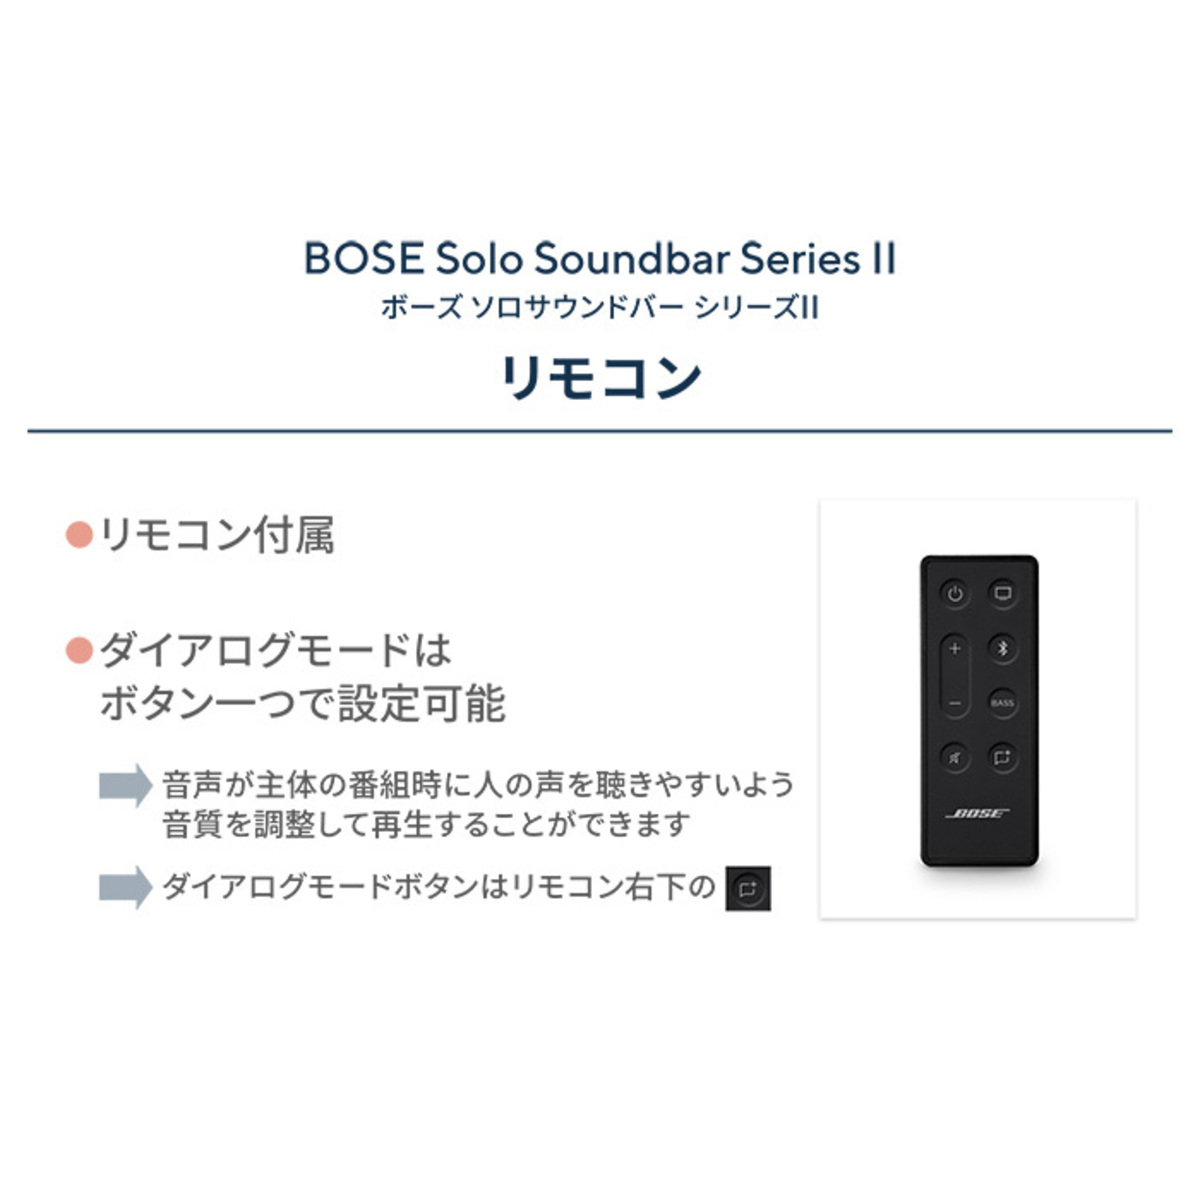 BOSE ソロ サウンドバー シリーズII BOSEボーズ   QVC.jp